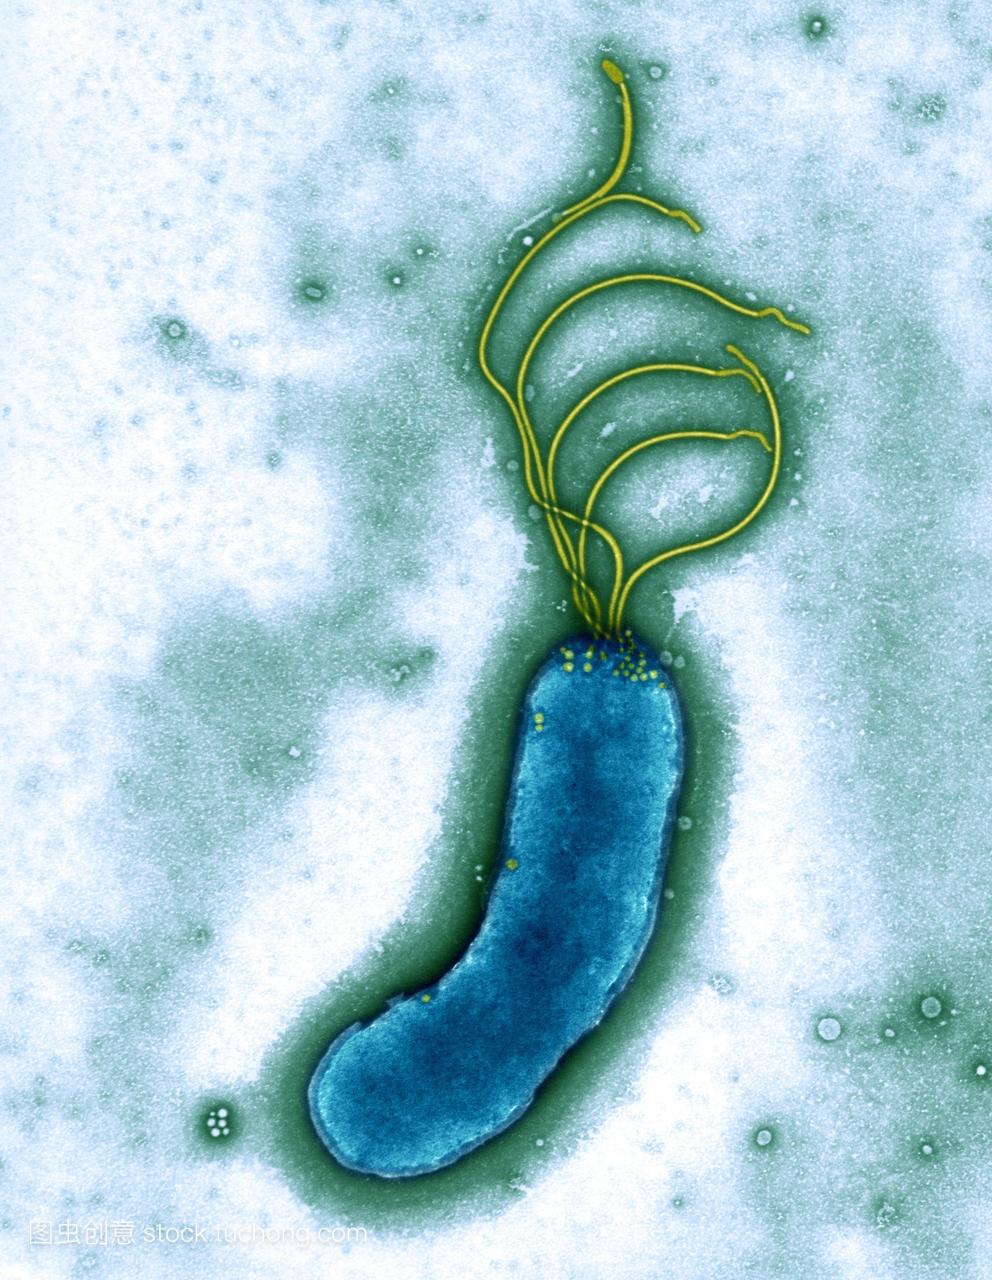 幽门螺旋杆菌细菌彩色透射电子显微镜TEM。